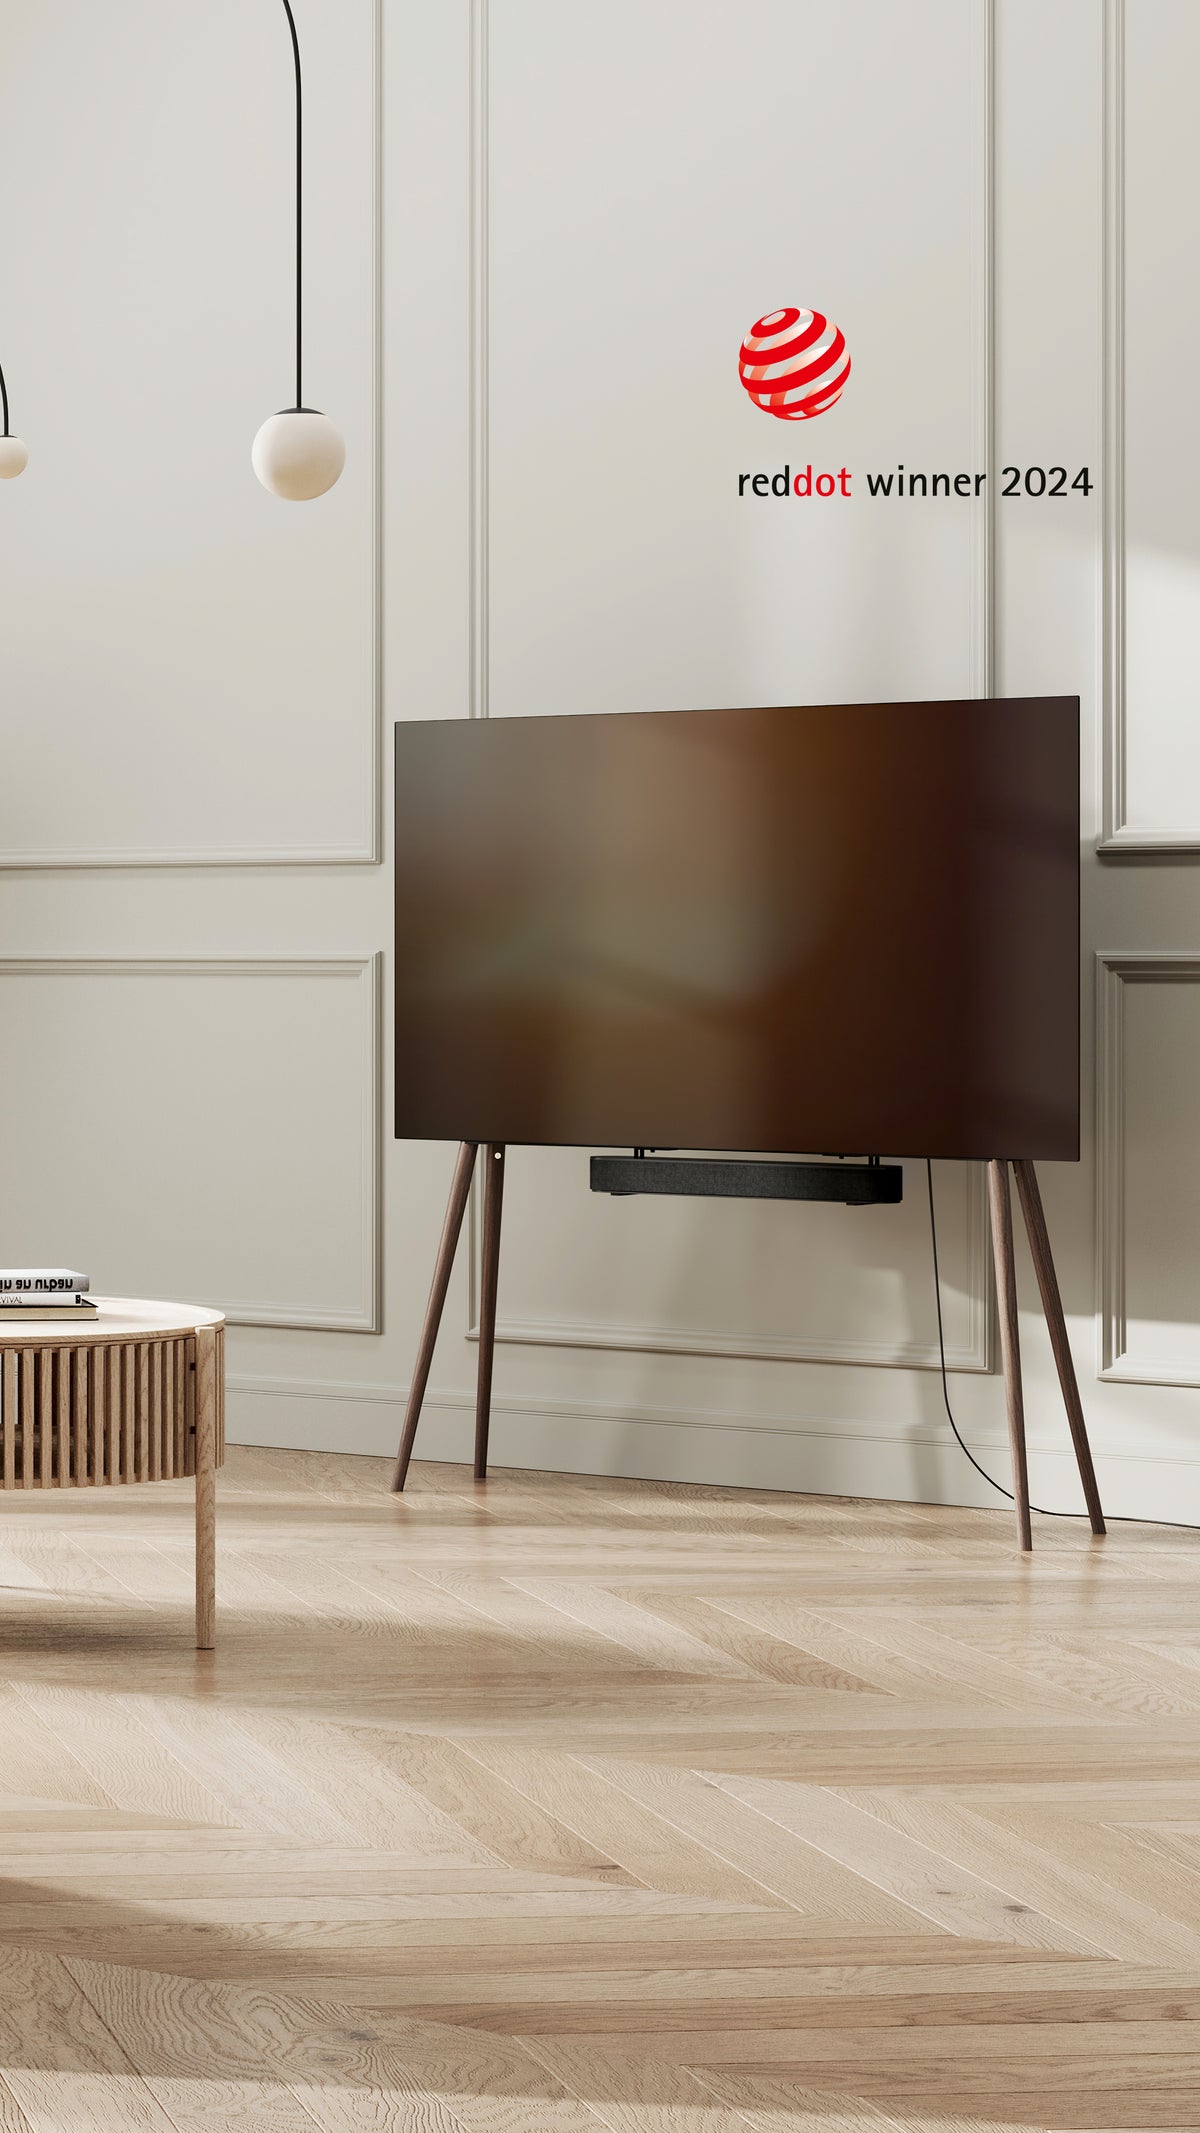 JALG TV Stand reddot winner 2024 in living room 6